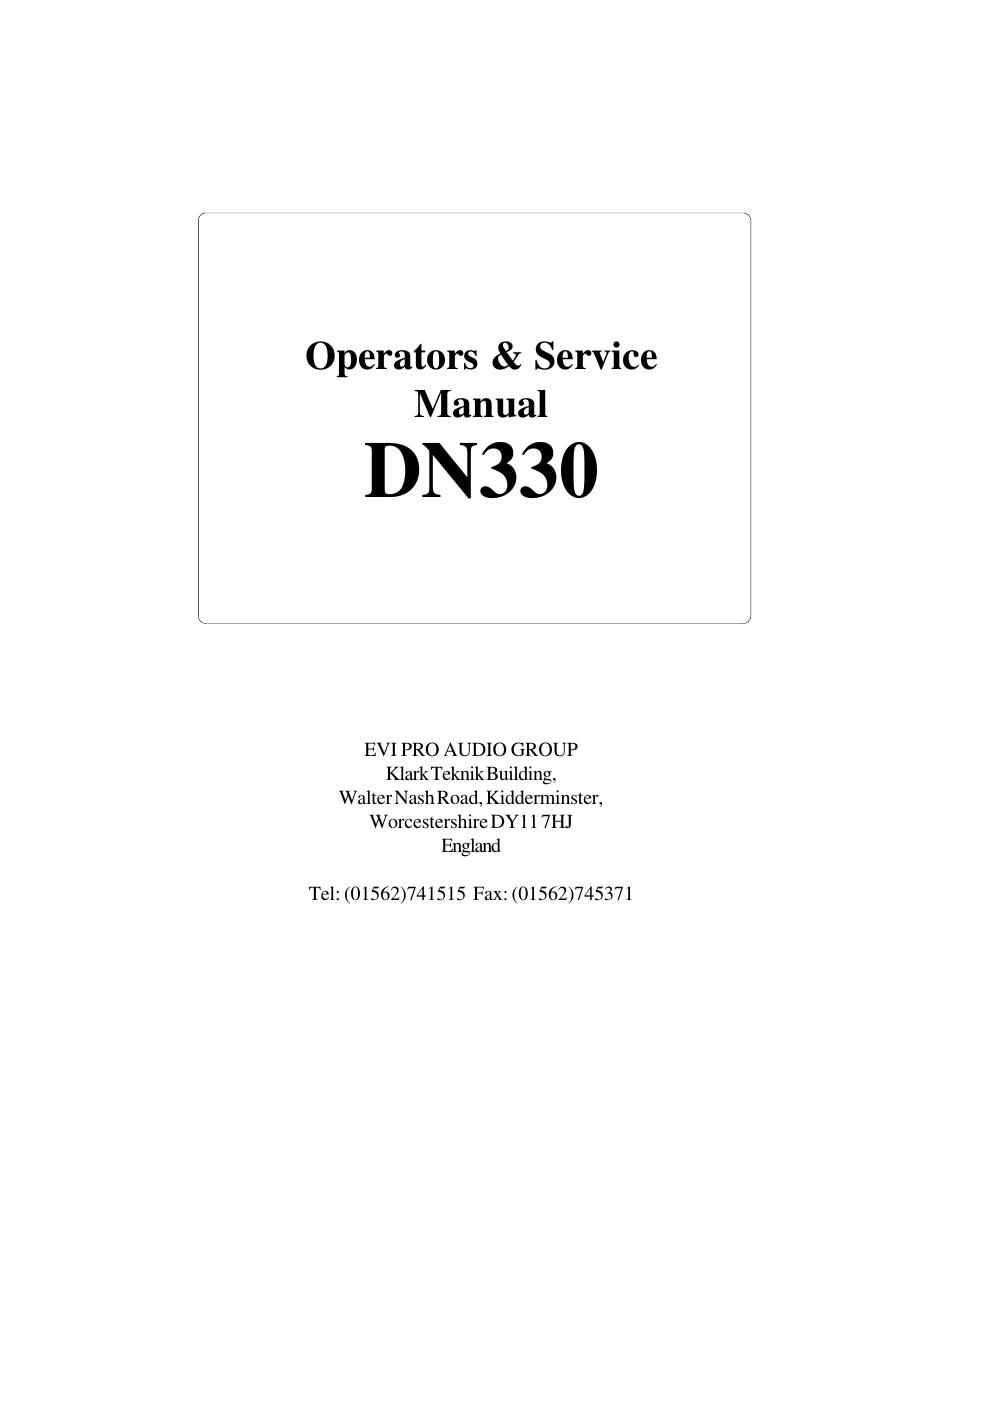 klark teknik dn330 operators and service manual alt